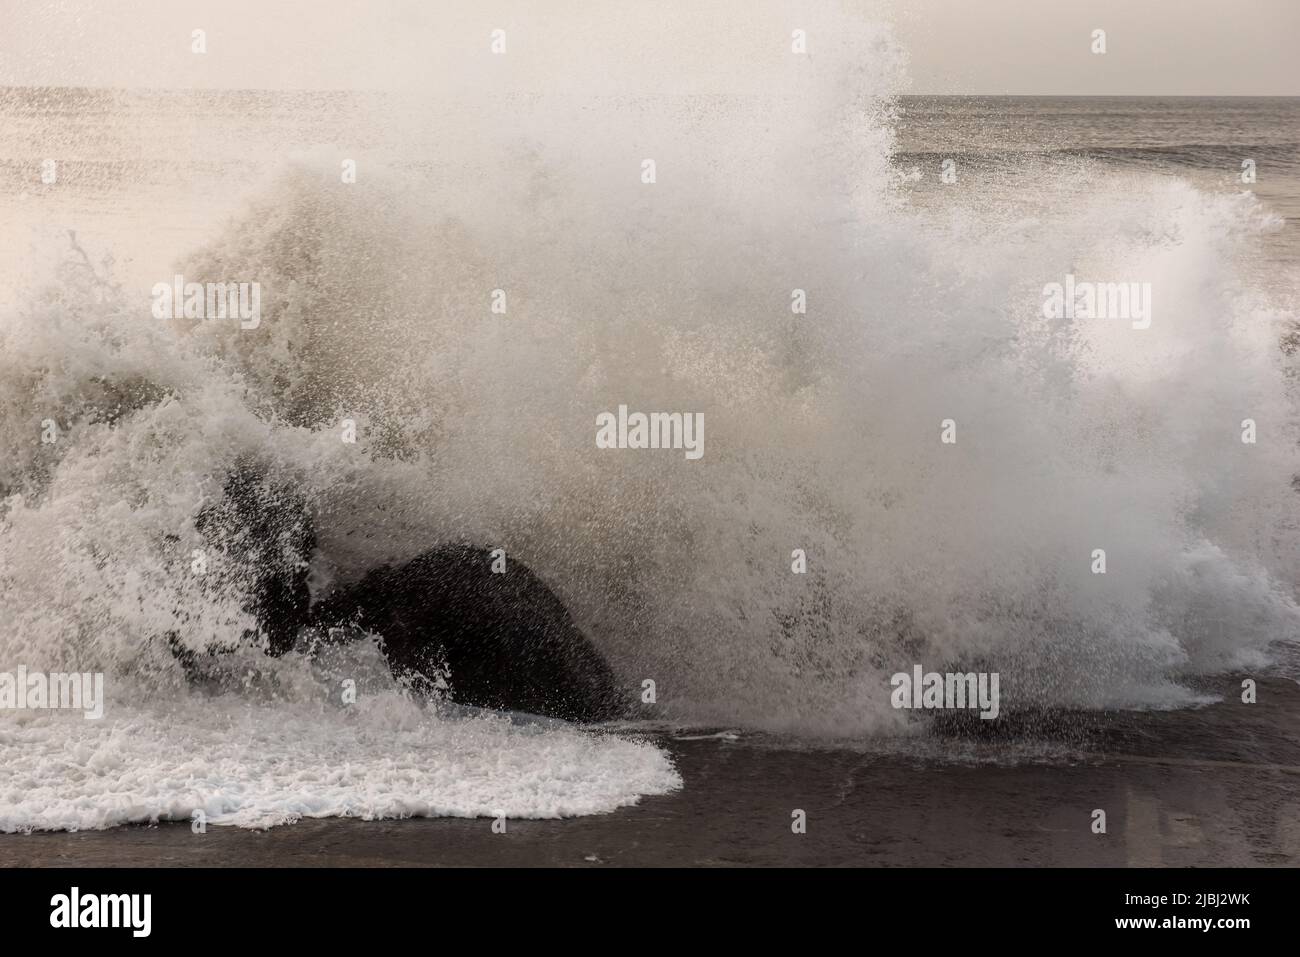 Des vagues qui se brisent et qui se brisent au-dessus de rochers sur la rive de la mer Banque D'Images